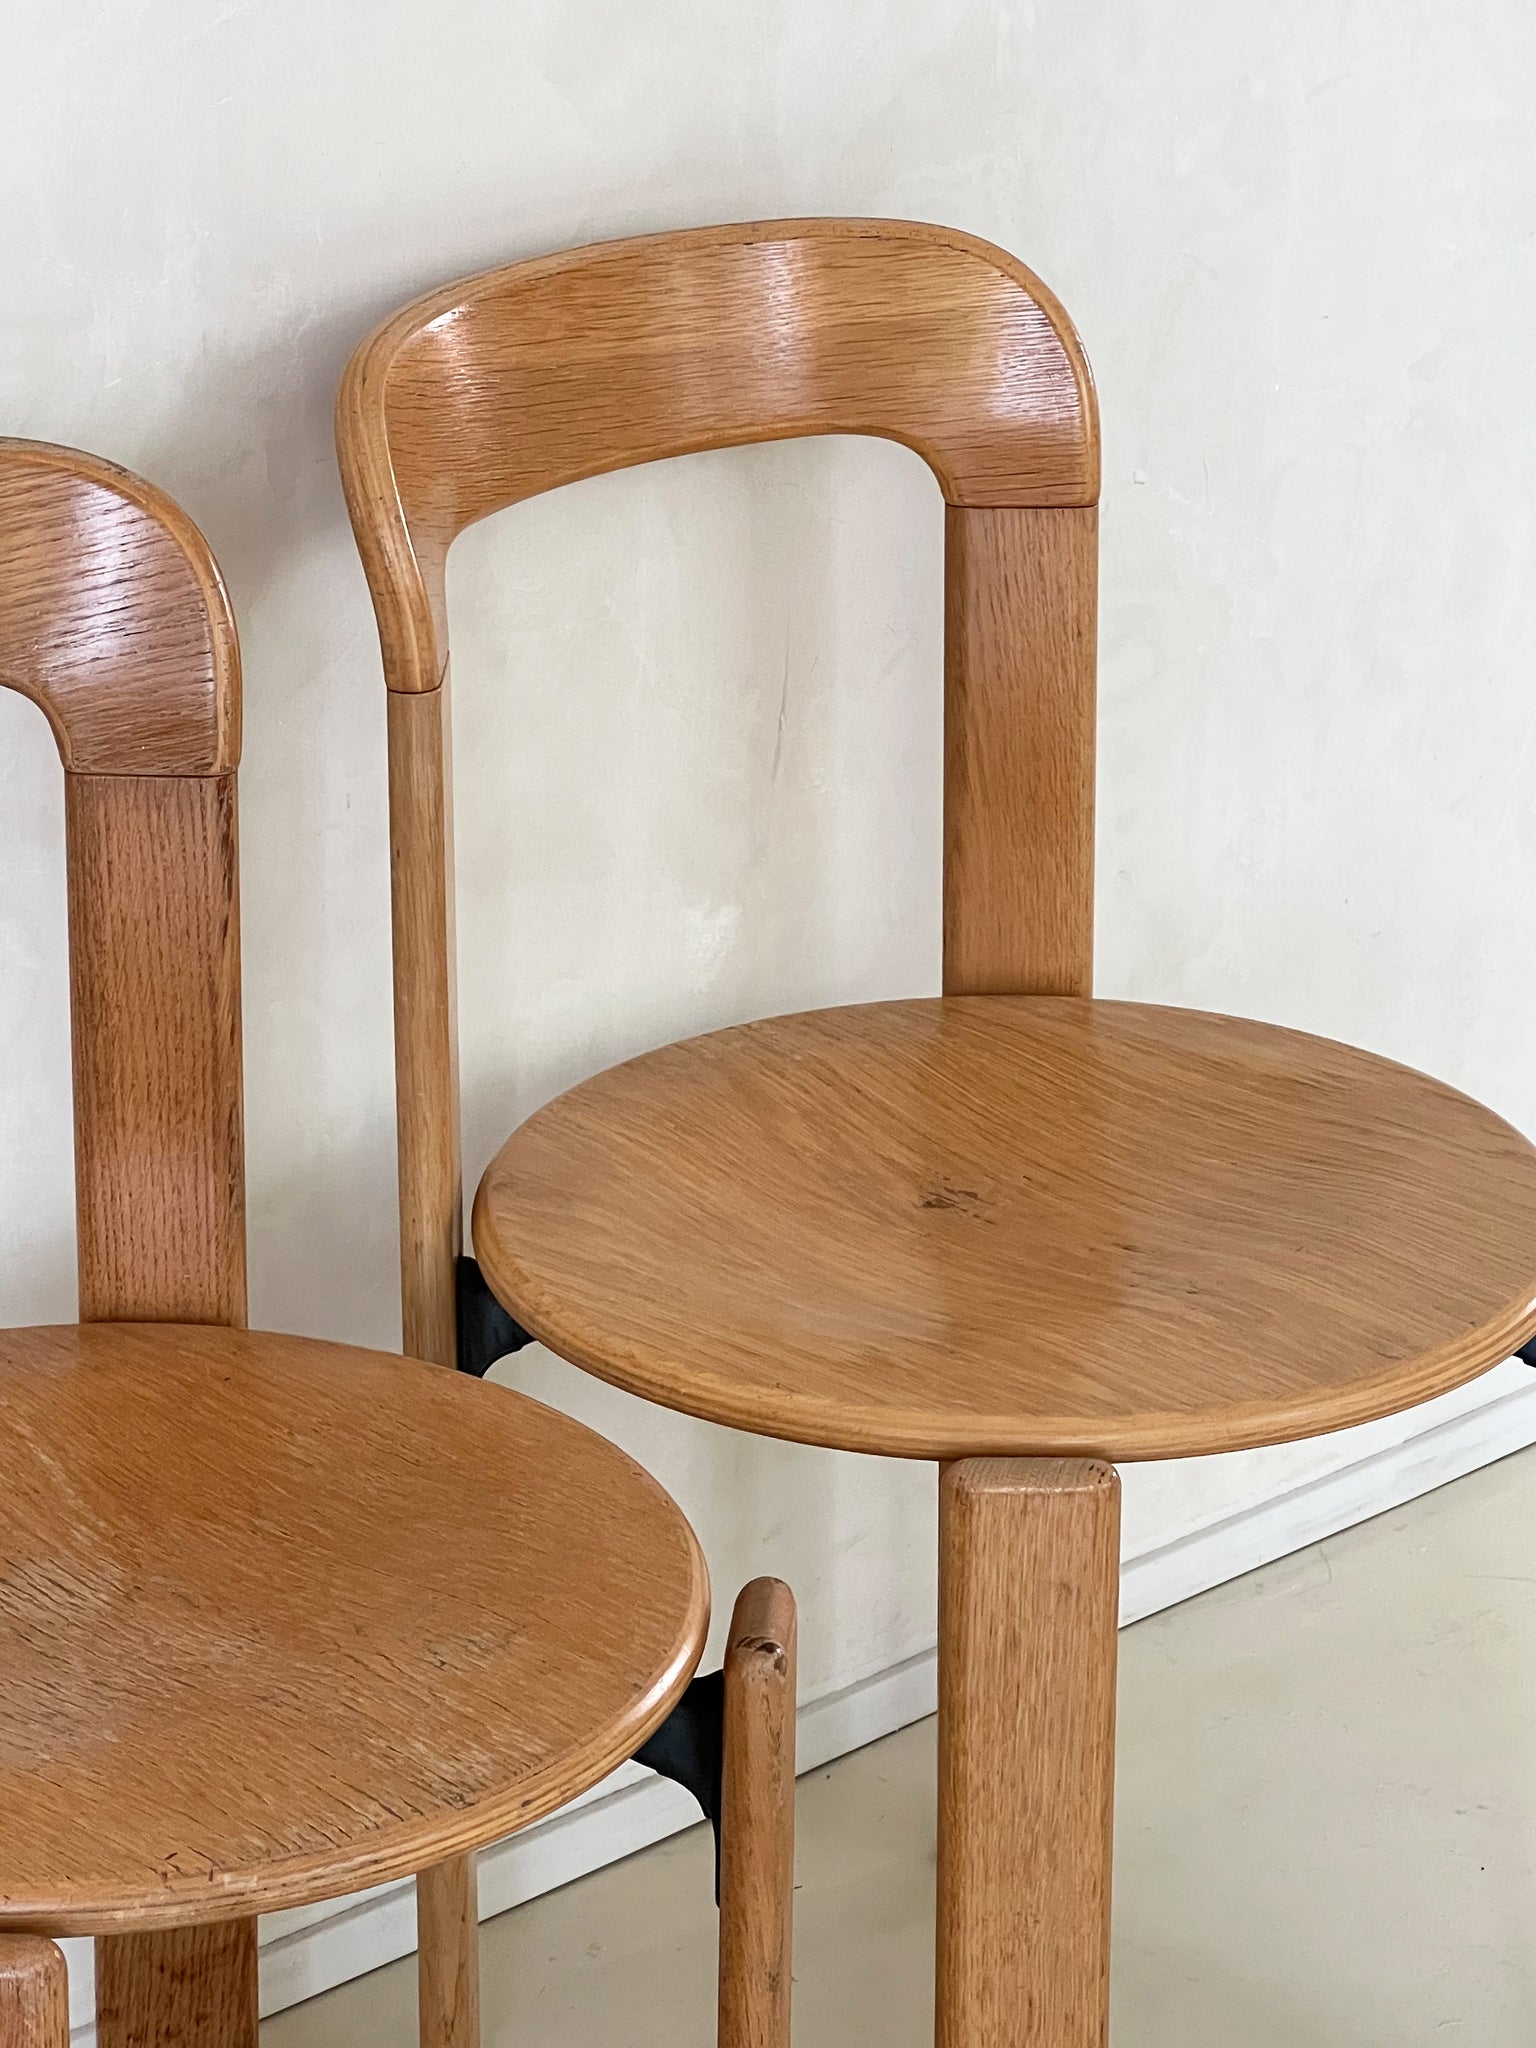 Vintage Oak Bruno Rey "Rey" Chairs, Pair